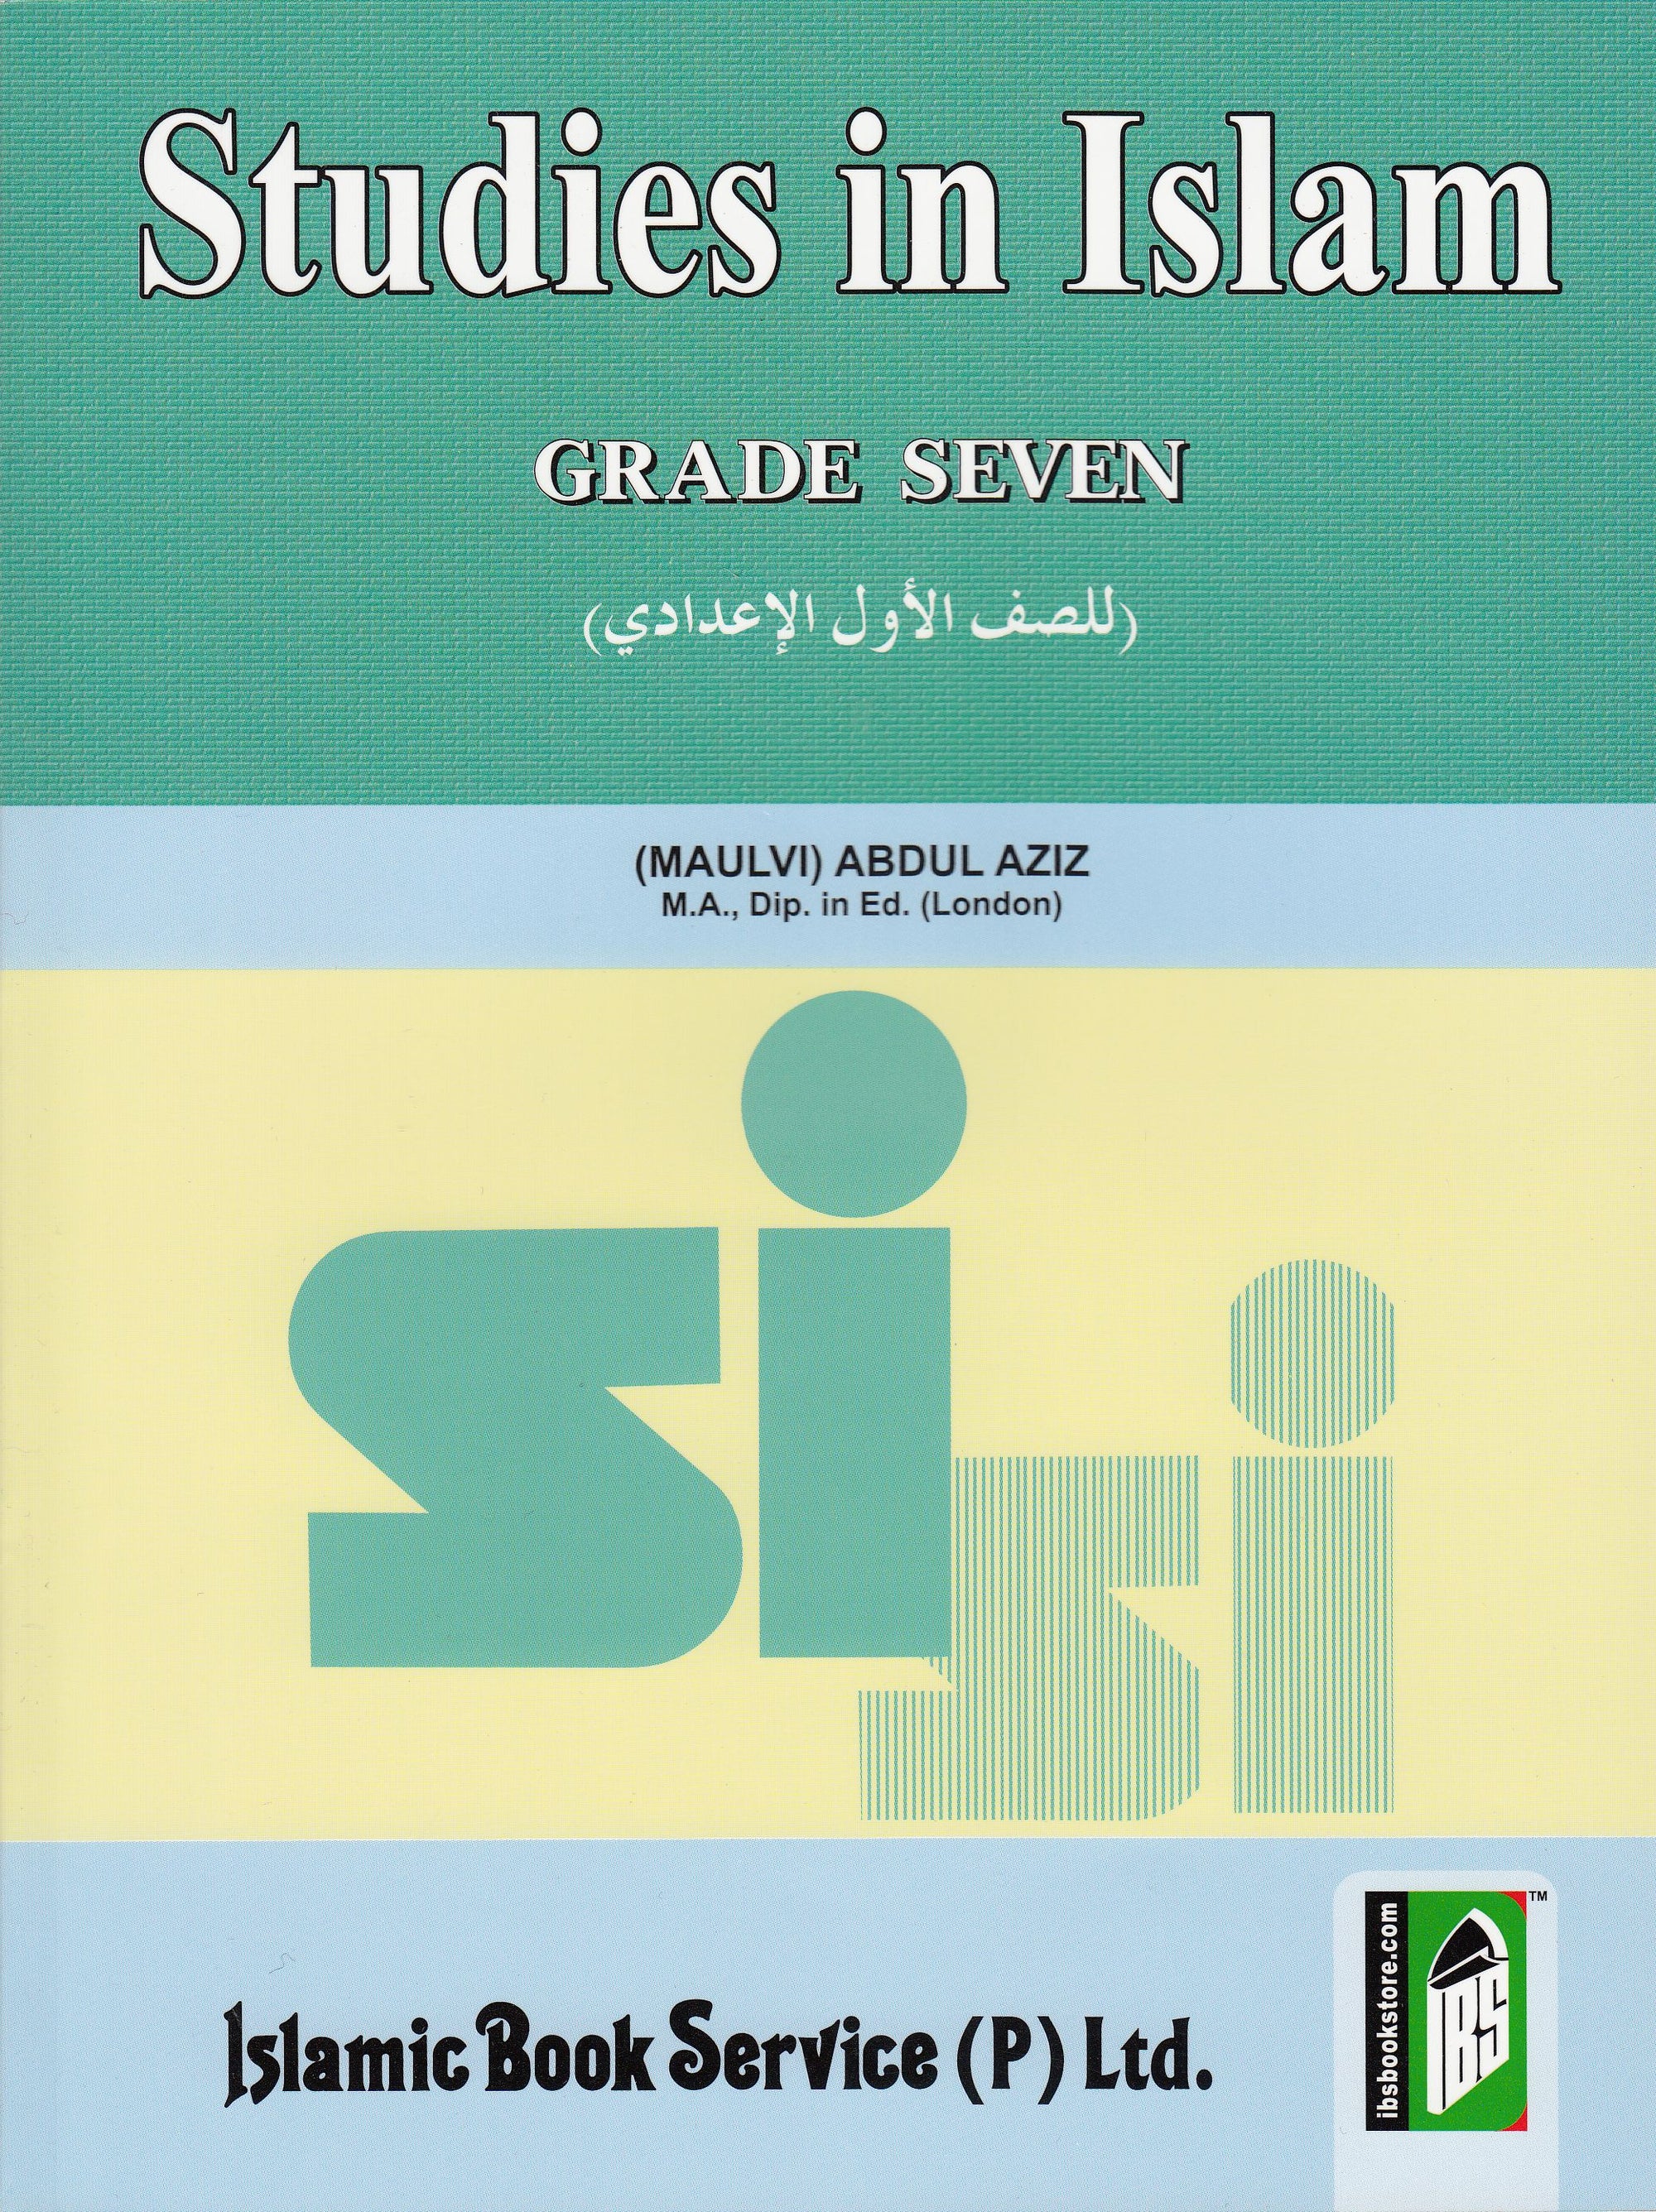 Studies in Islam: Grade 7